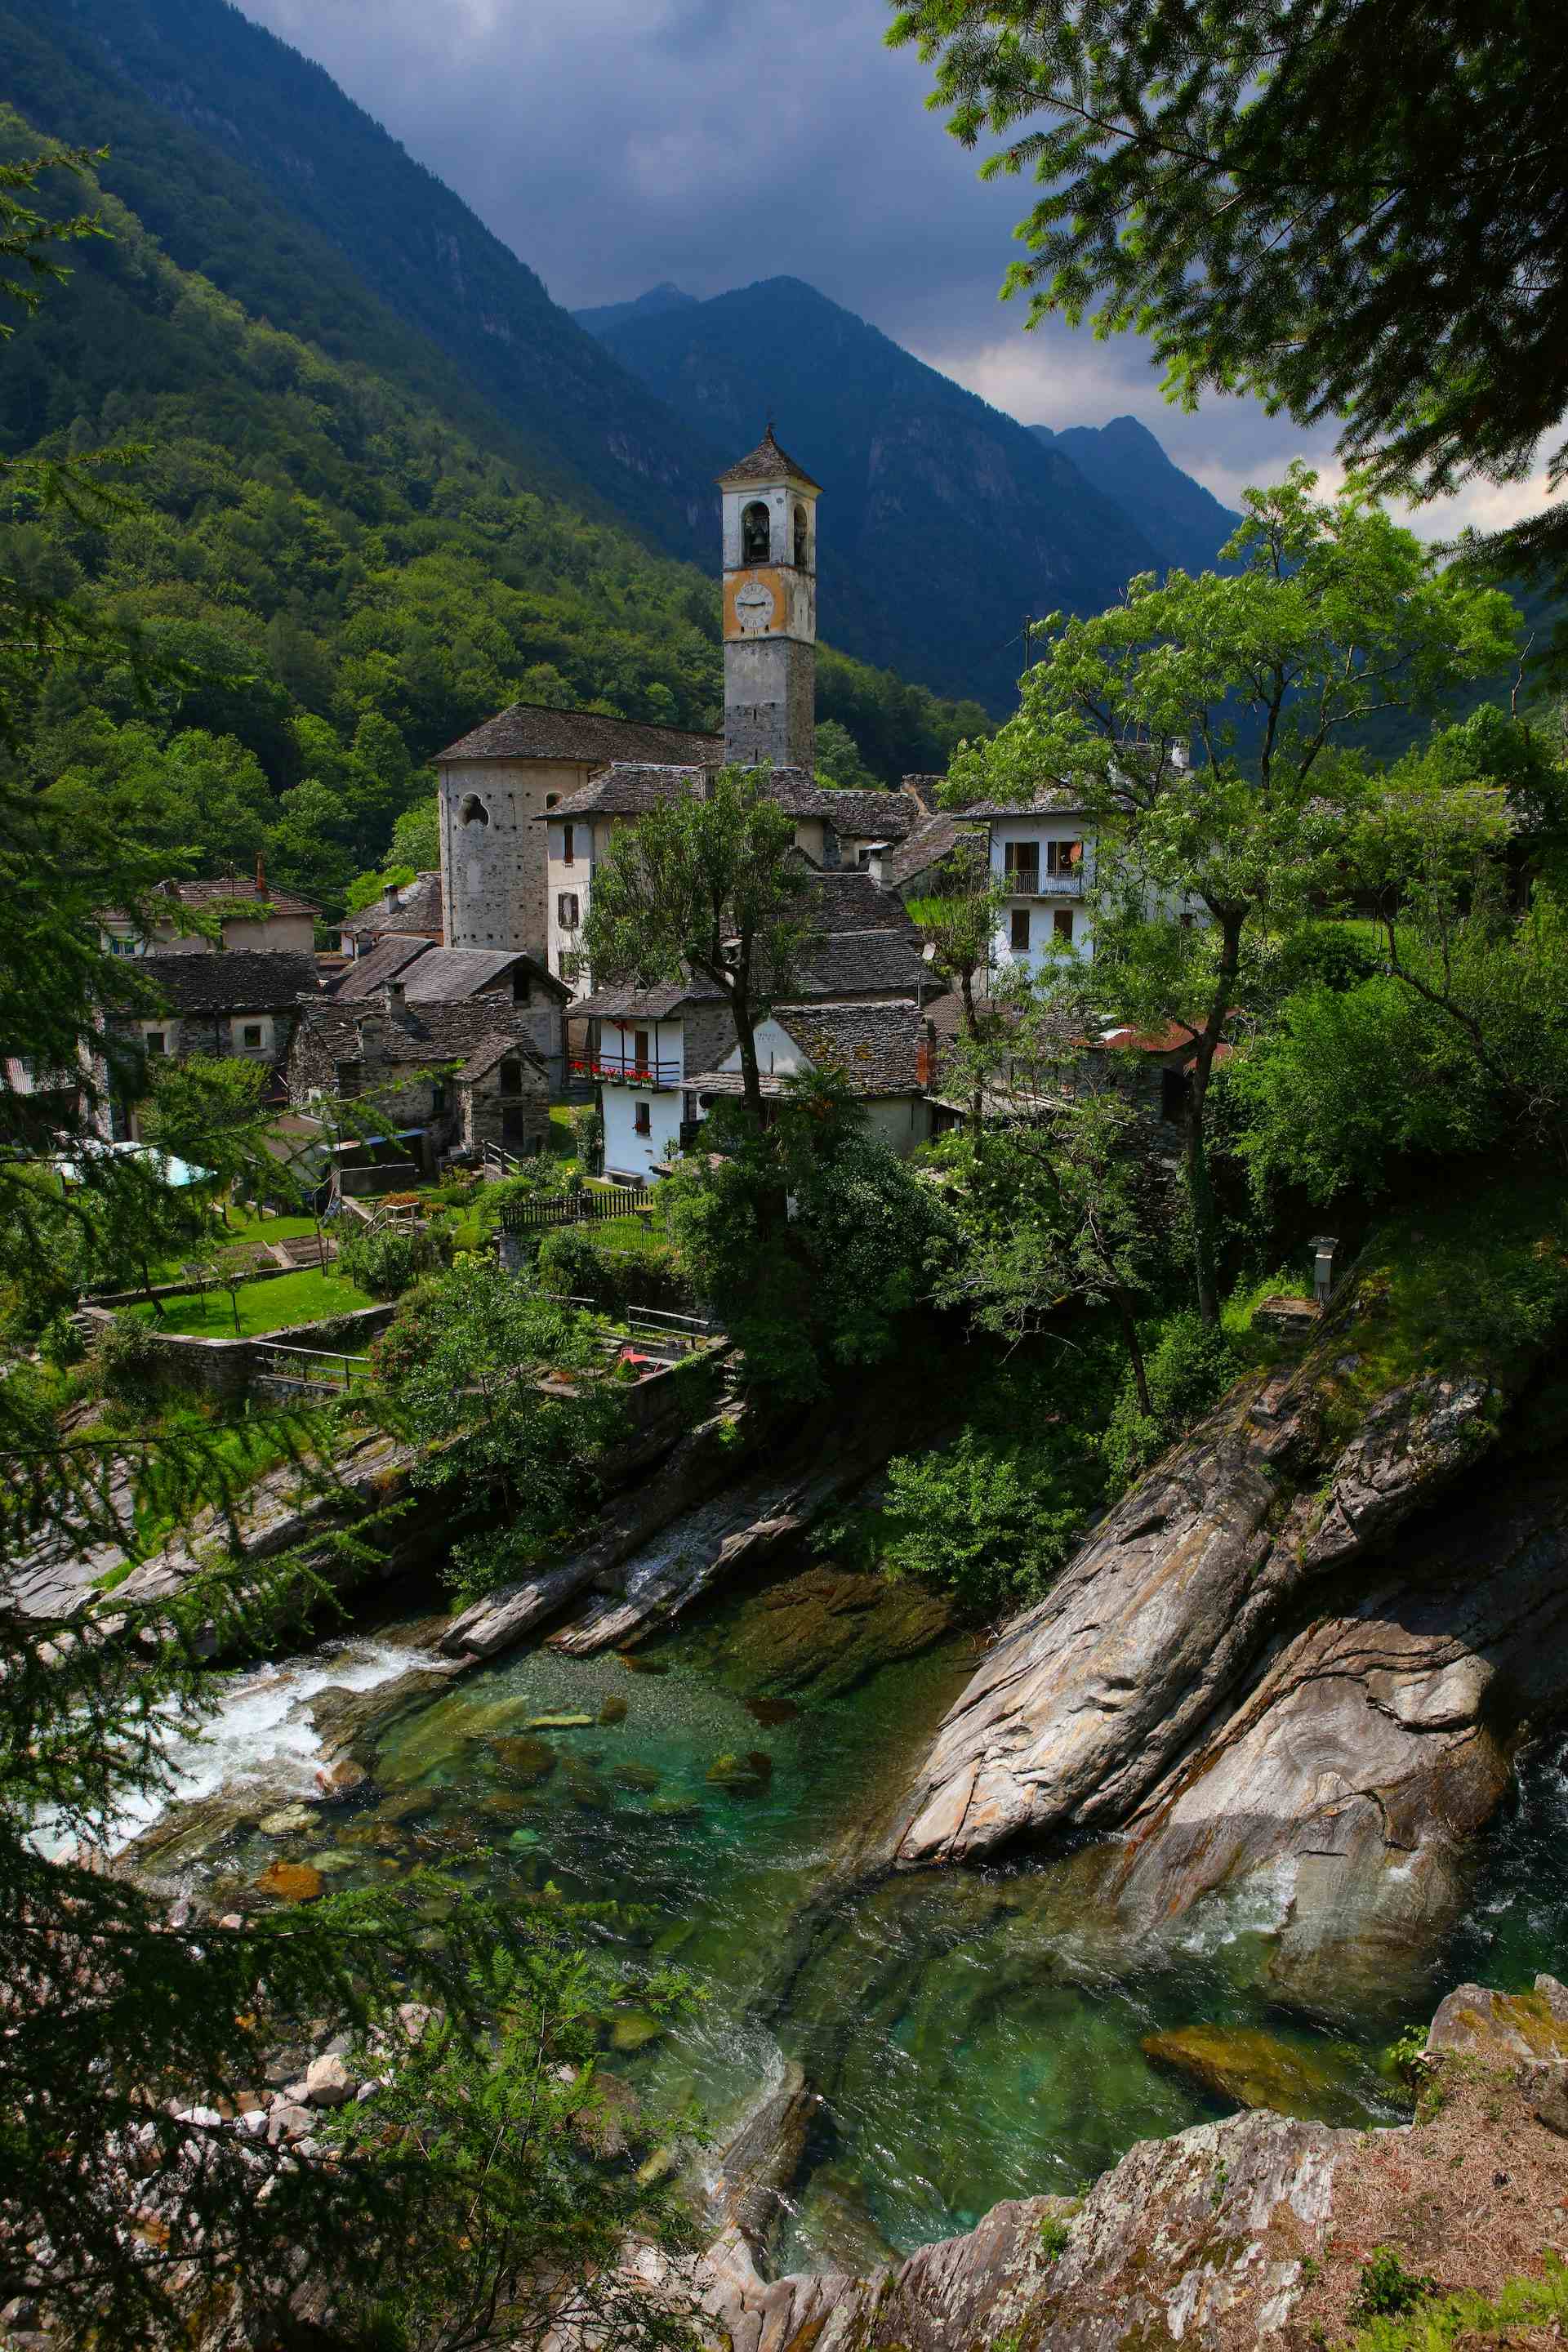 Azienda Agricola Bianchi, producer in Arogno canton of Ticino in Switzerland